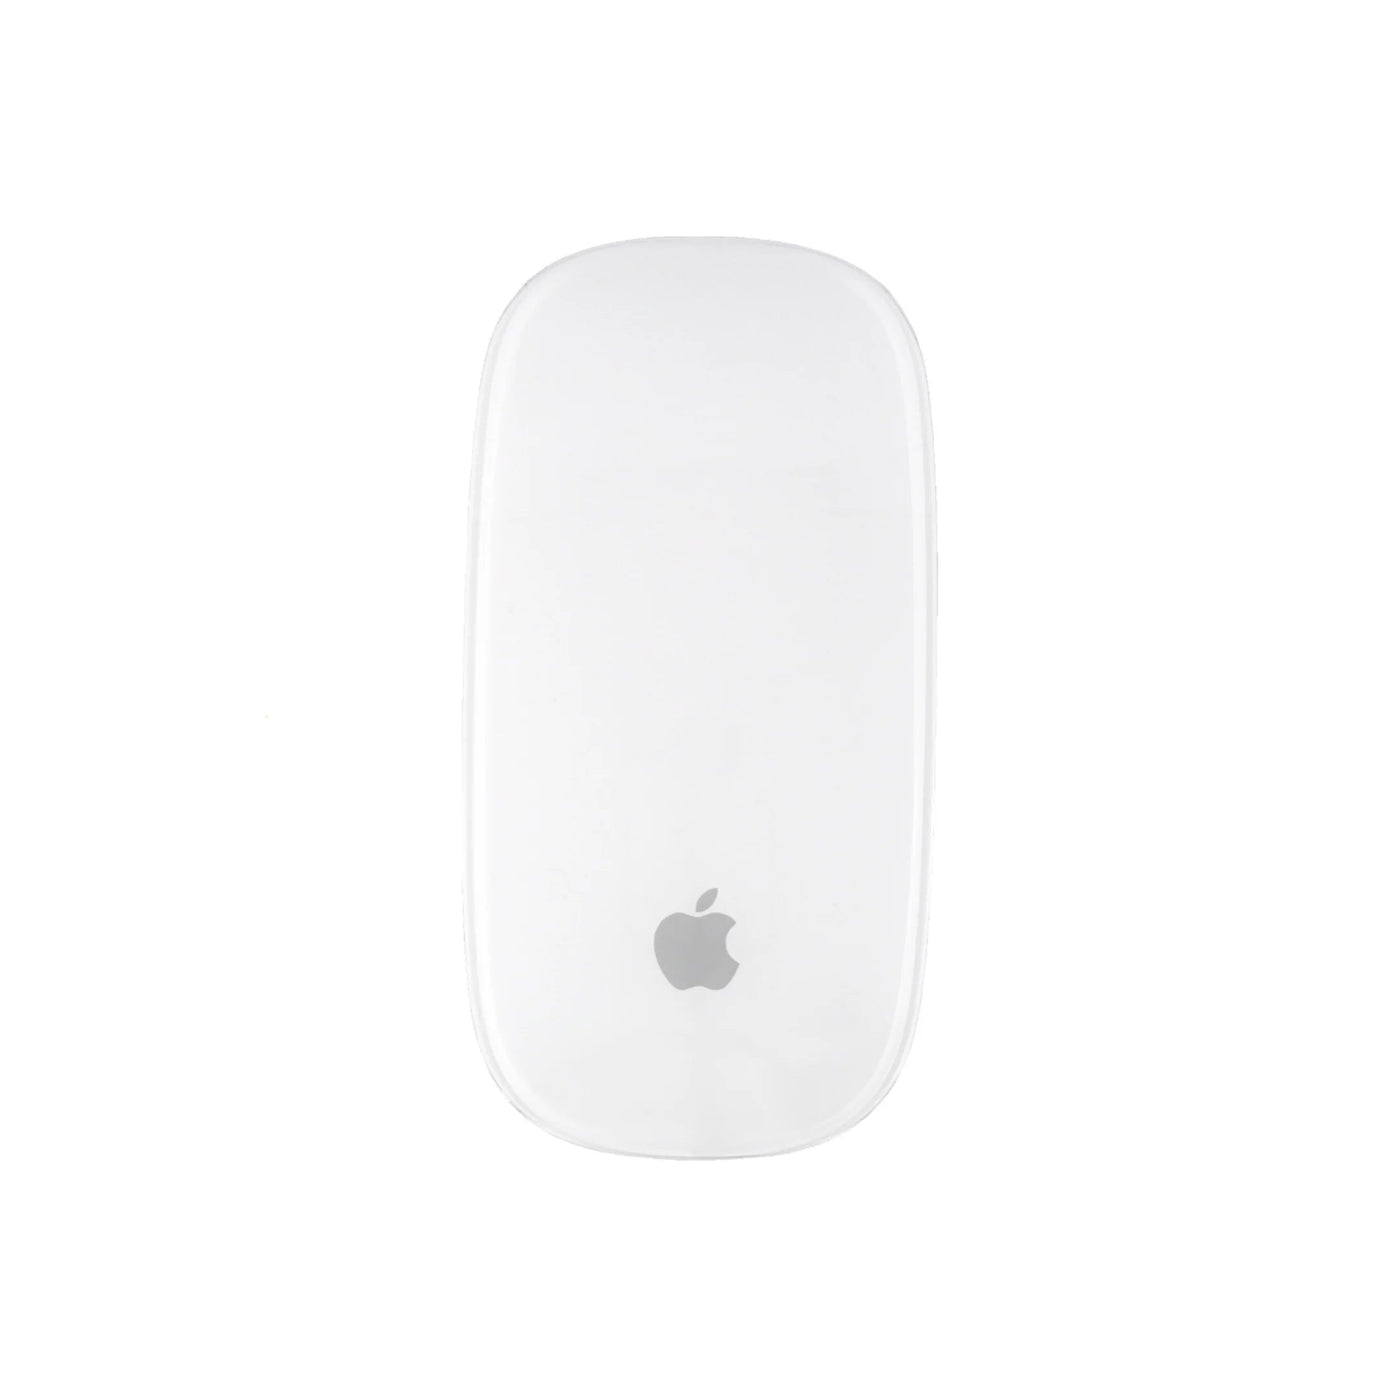 Apple Accessory Magic Mouse